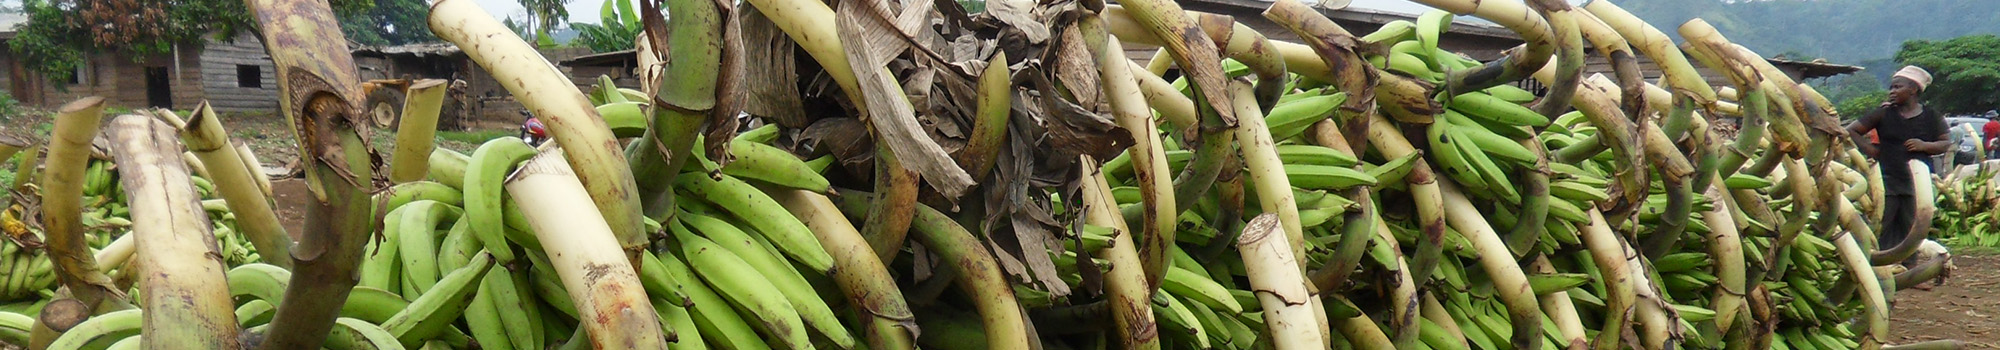  Récolte de plantain en côte d'Ivoire. © S. Depigny et P. Pugeaux, Cirad